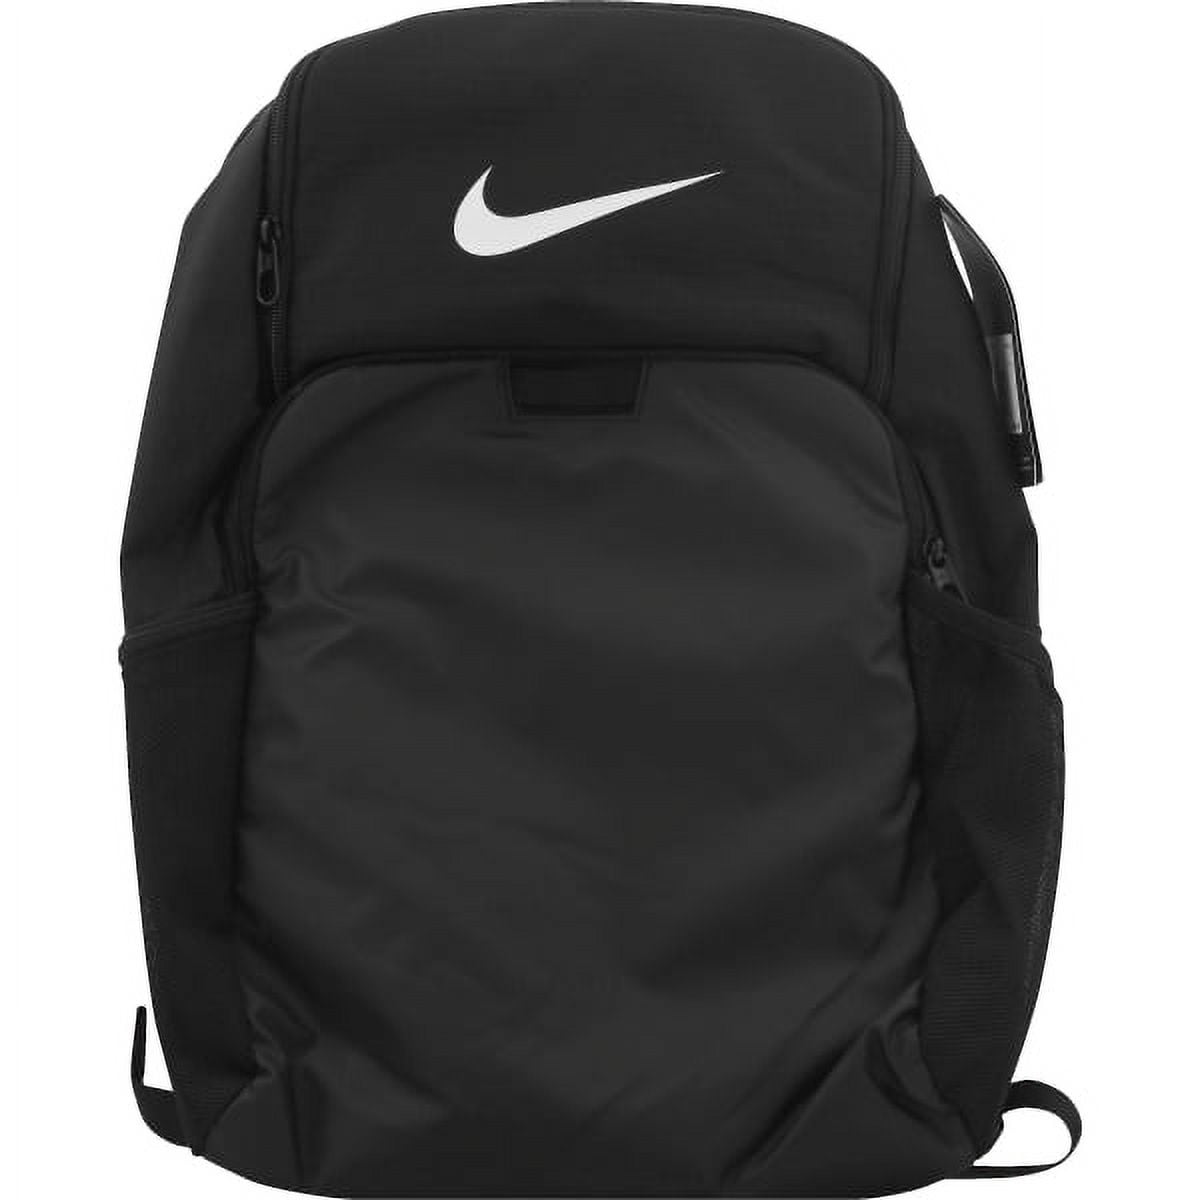 NIKE Brasilia 9.0 X-Large Backpack, BA5959 (Flint Grey/Black/White) 